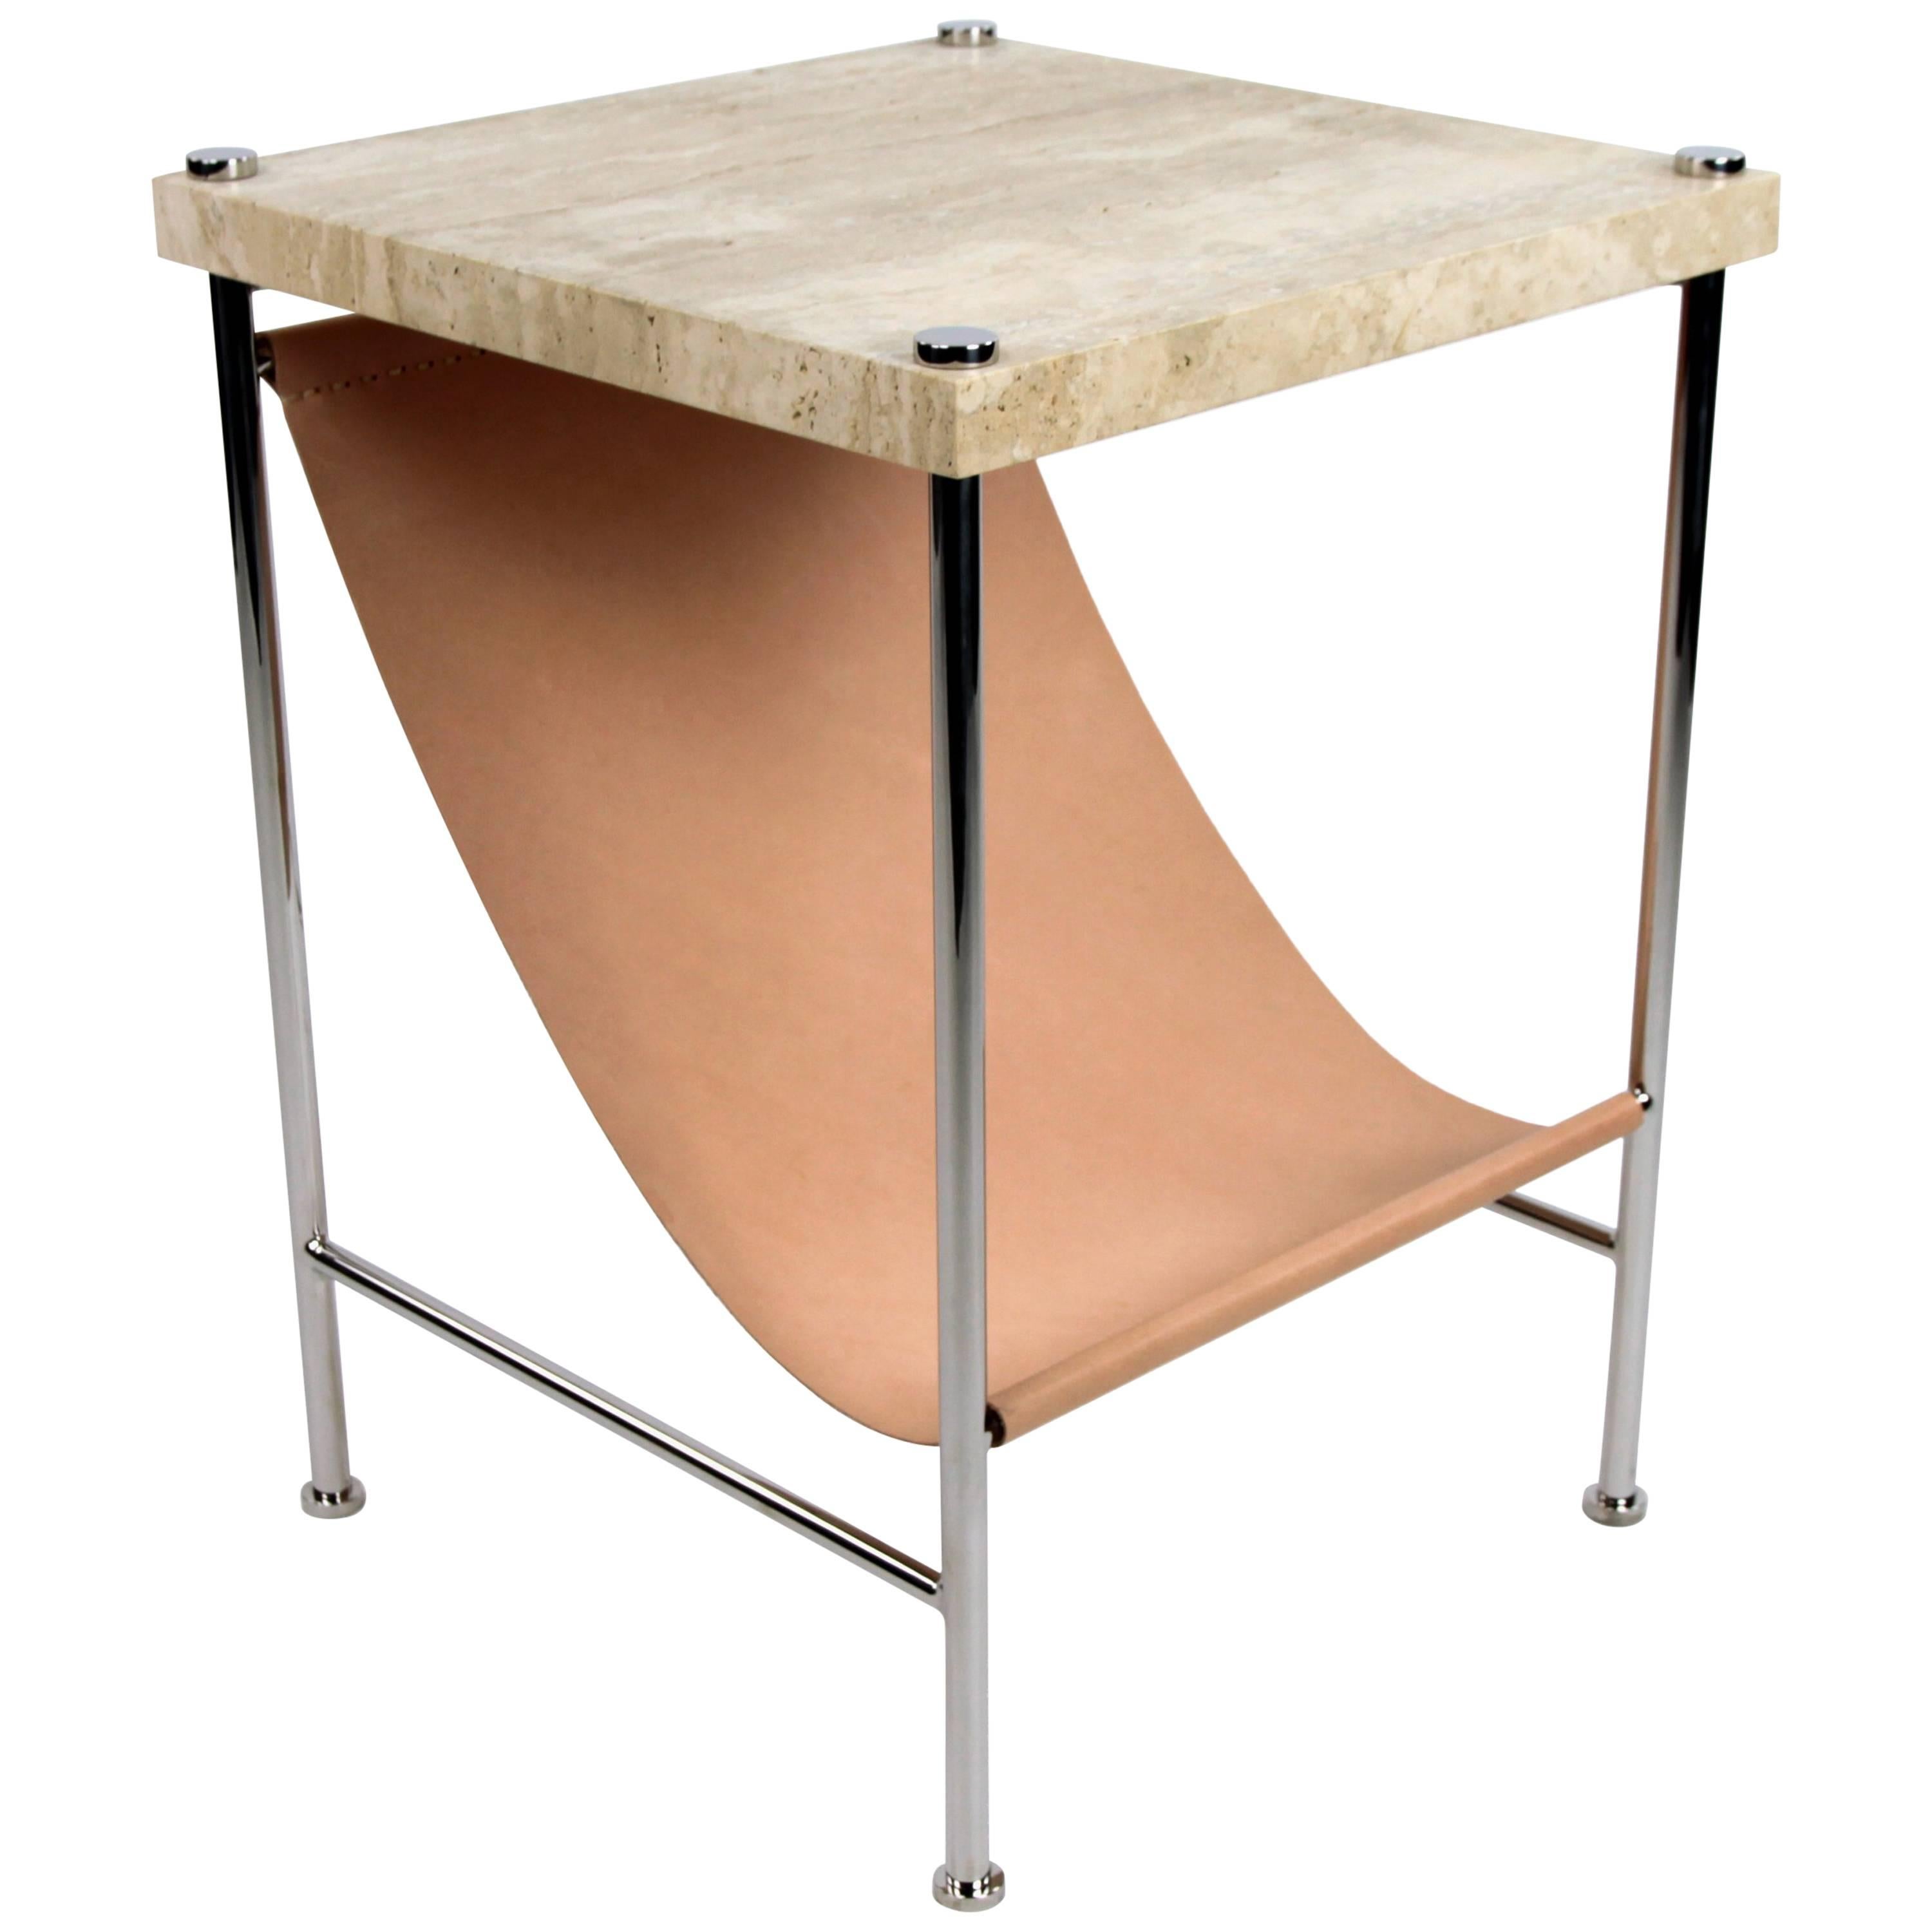 Table d'appoint en bandoulière en cuir, acier inoxydable, travertin et cuir naturel 